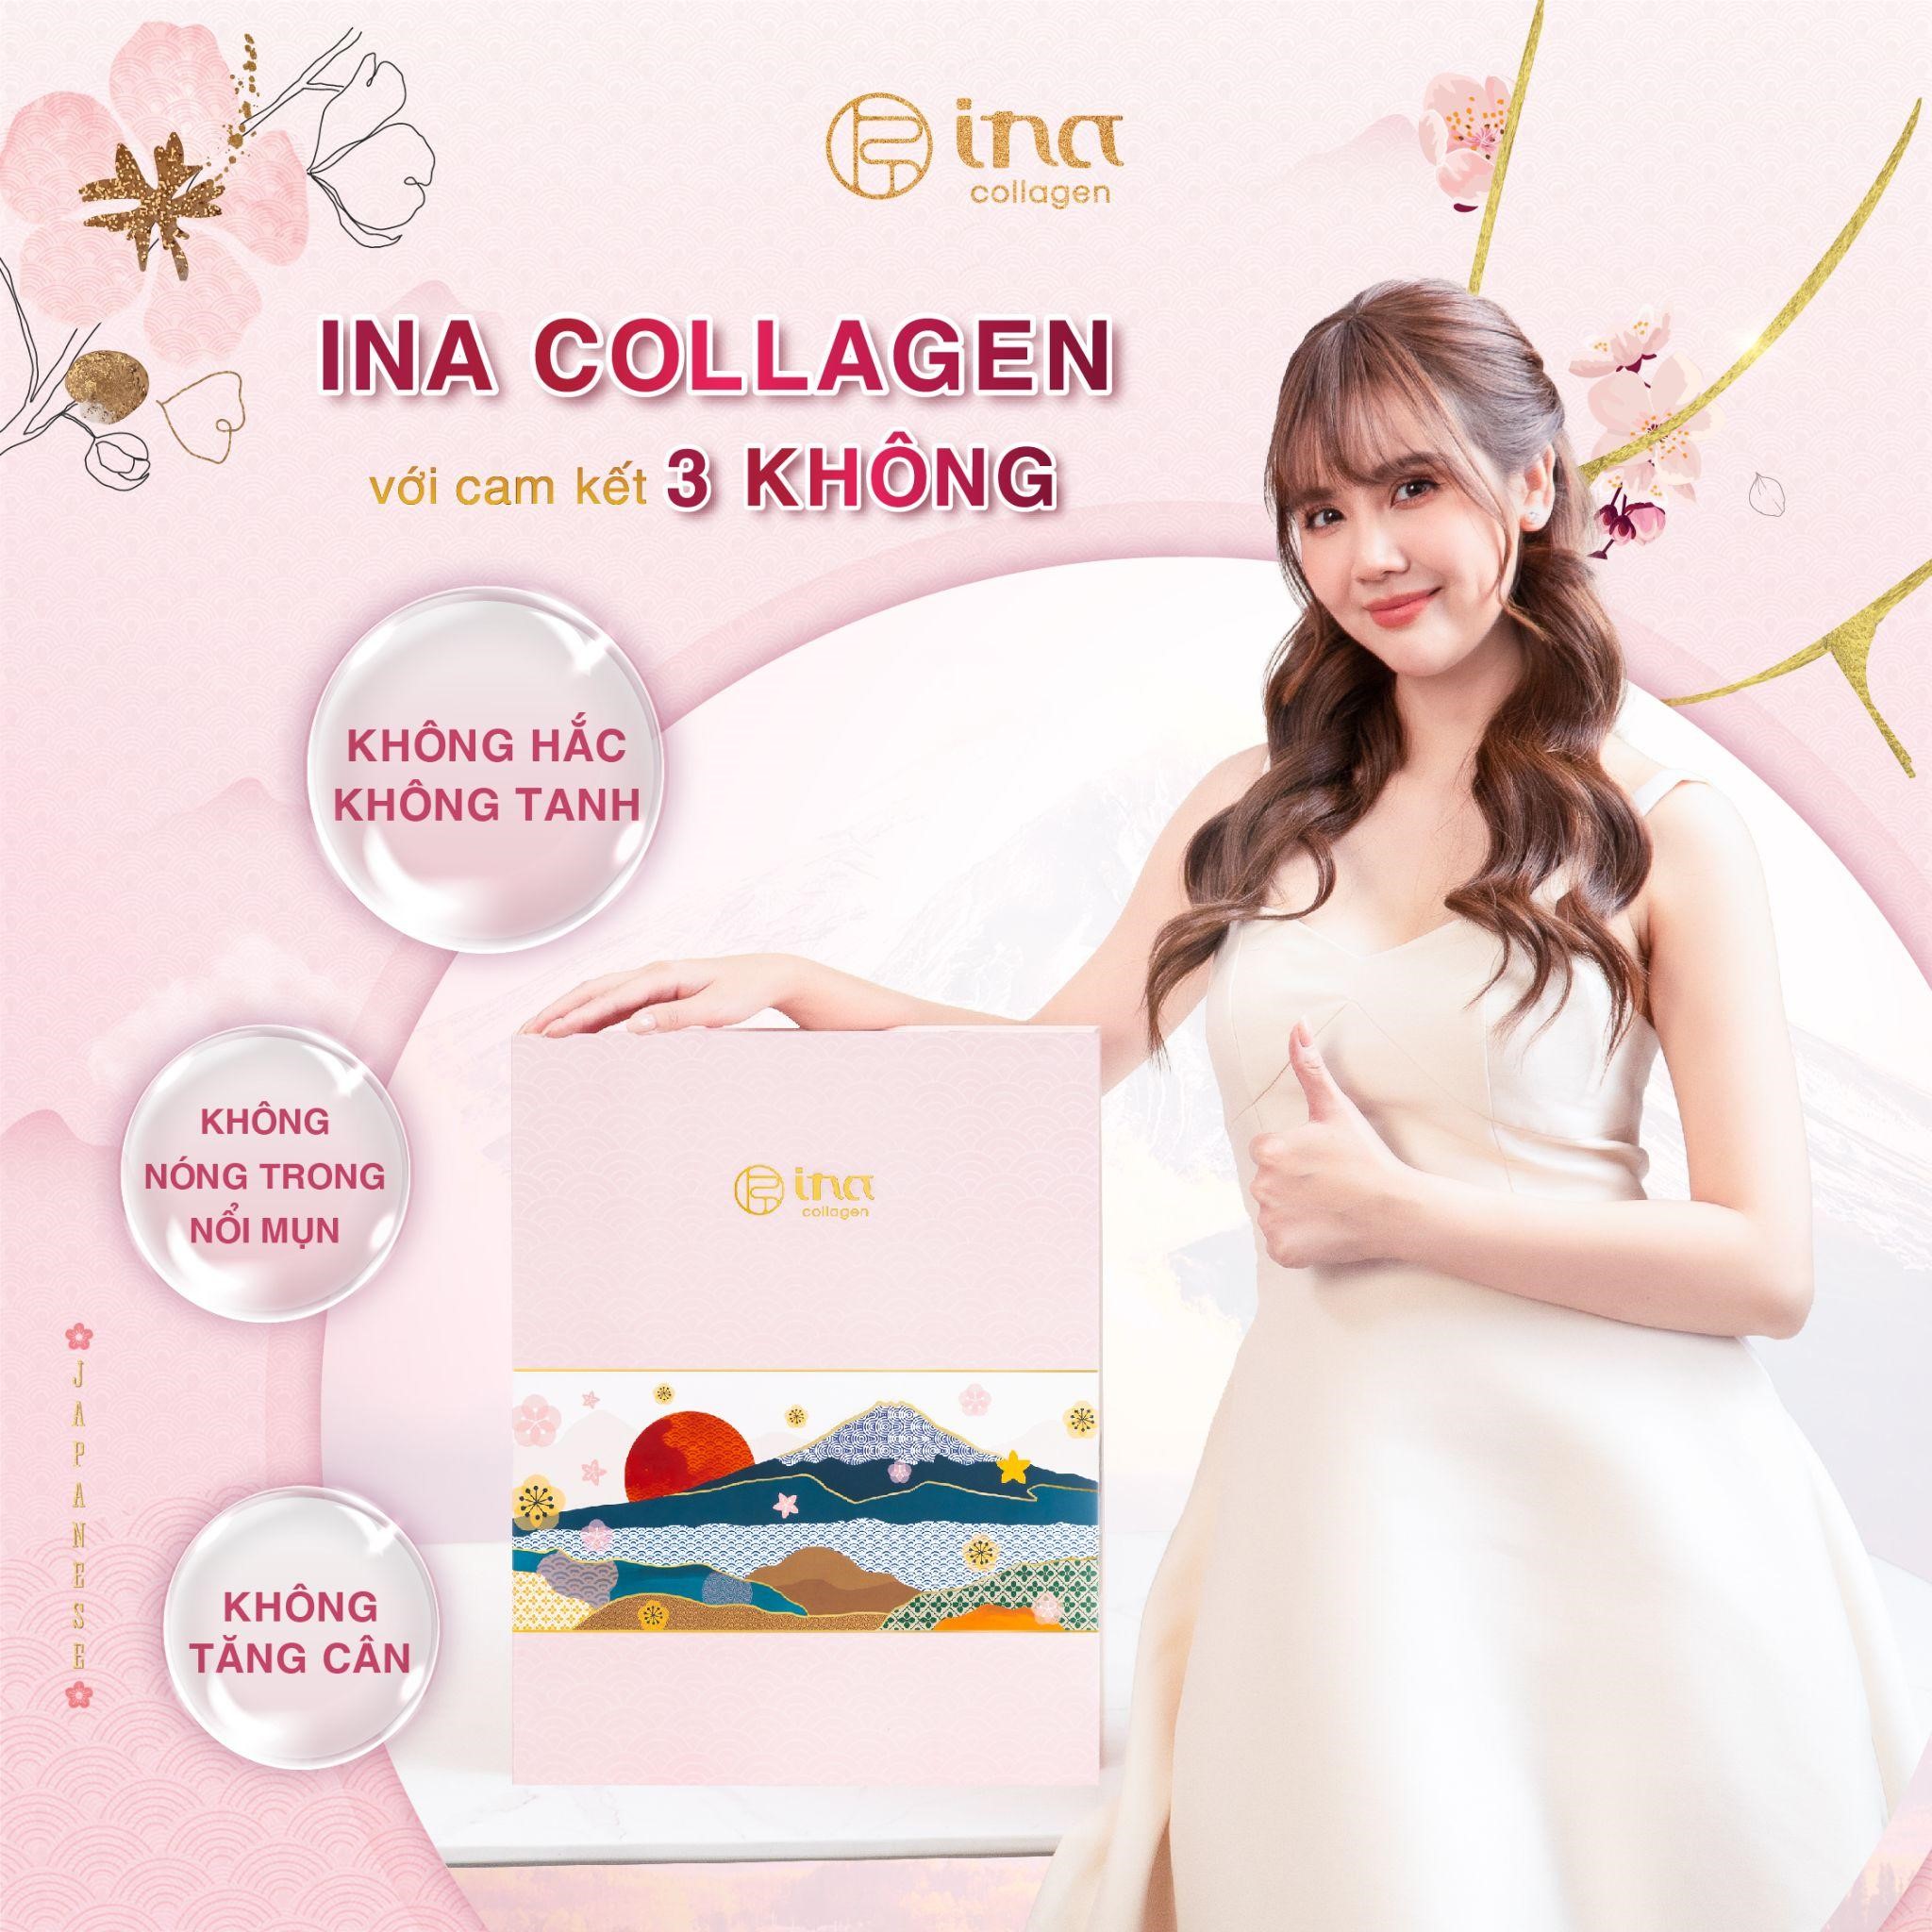 INA Collagen được cam kết “3 Không”